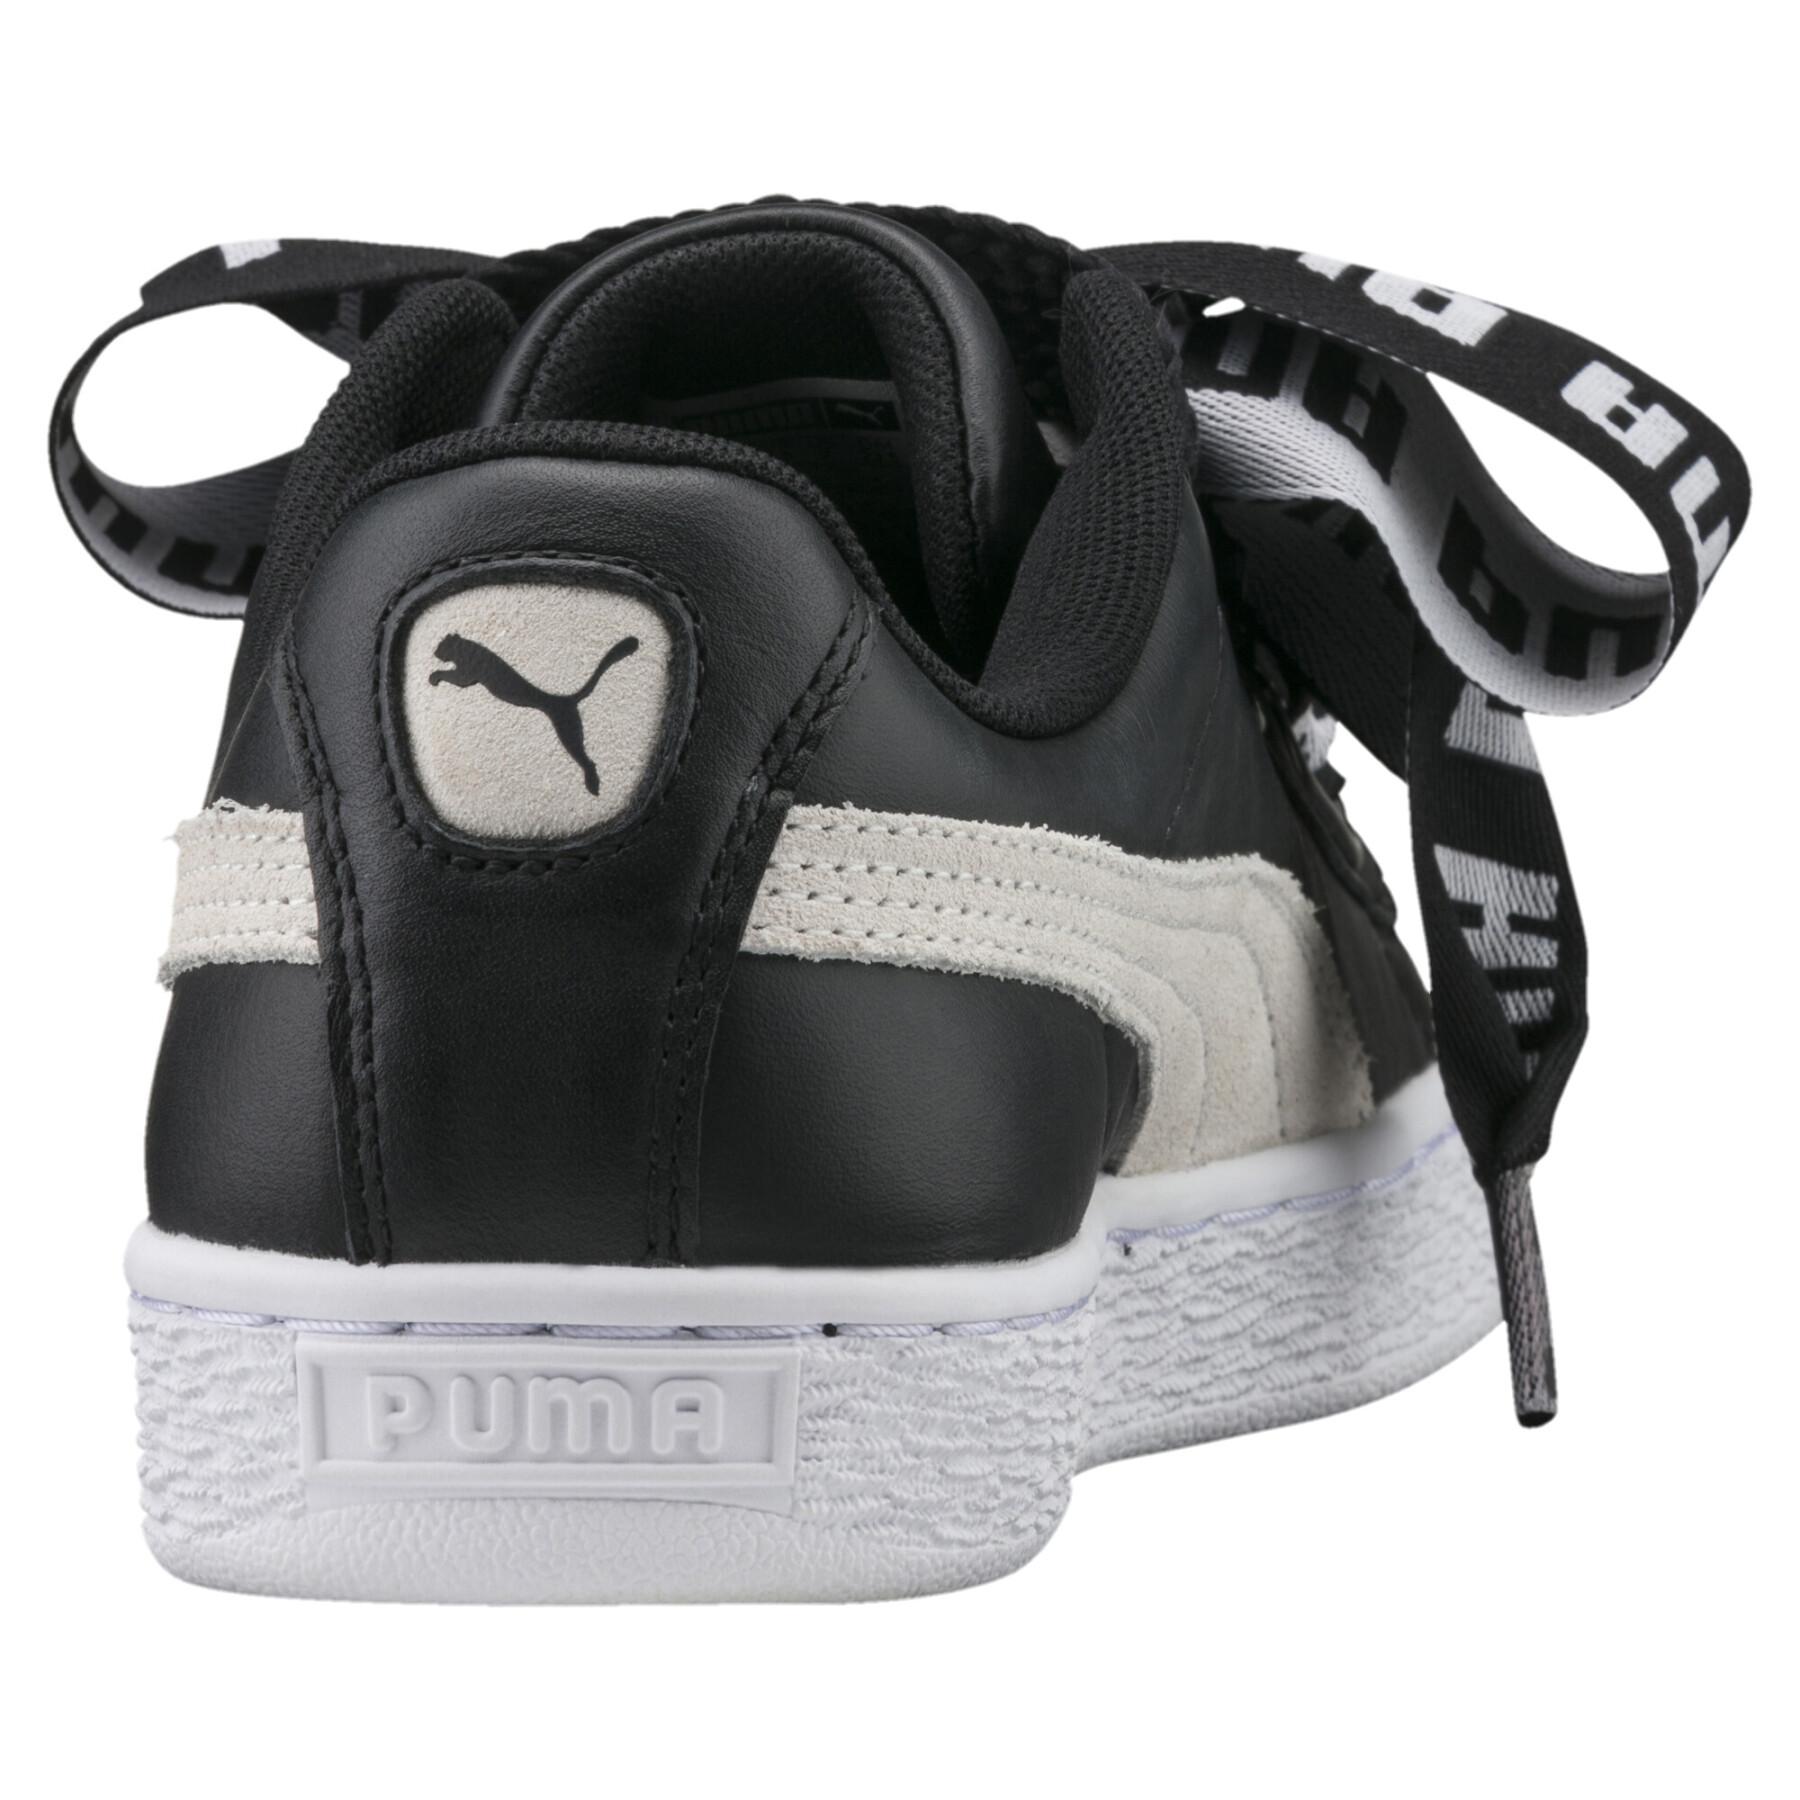 Women's sneakers Puma Heart